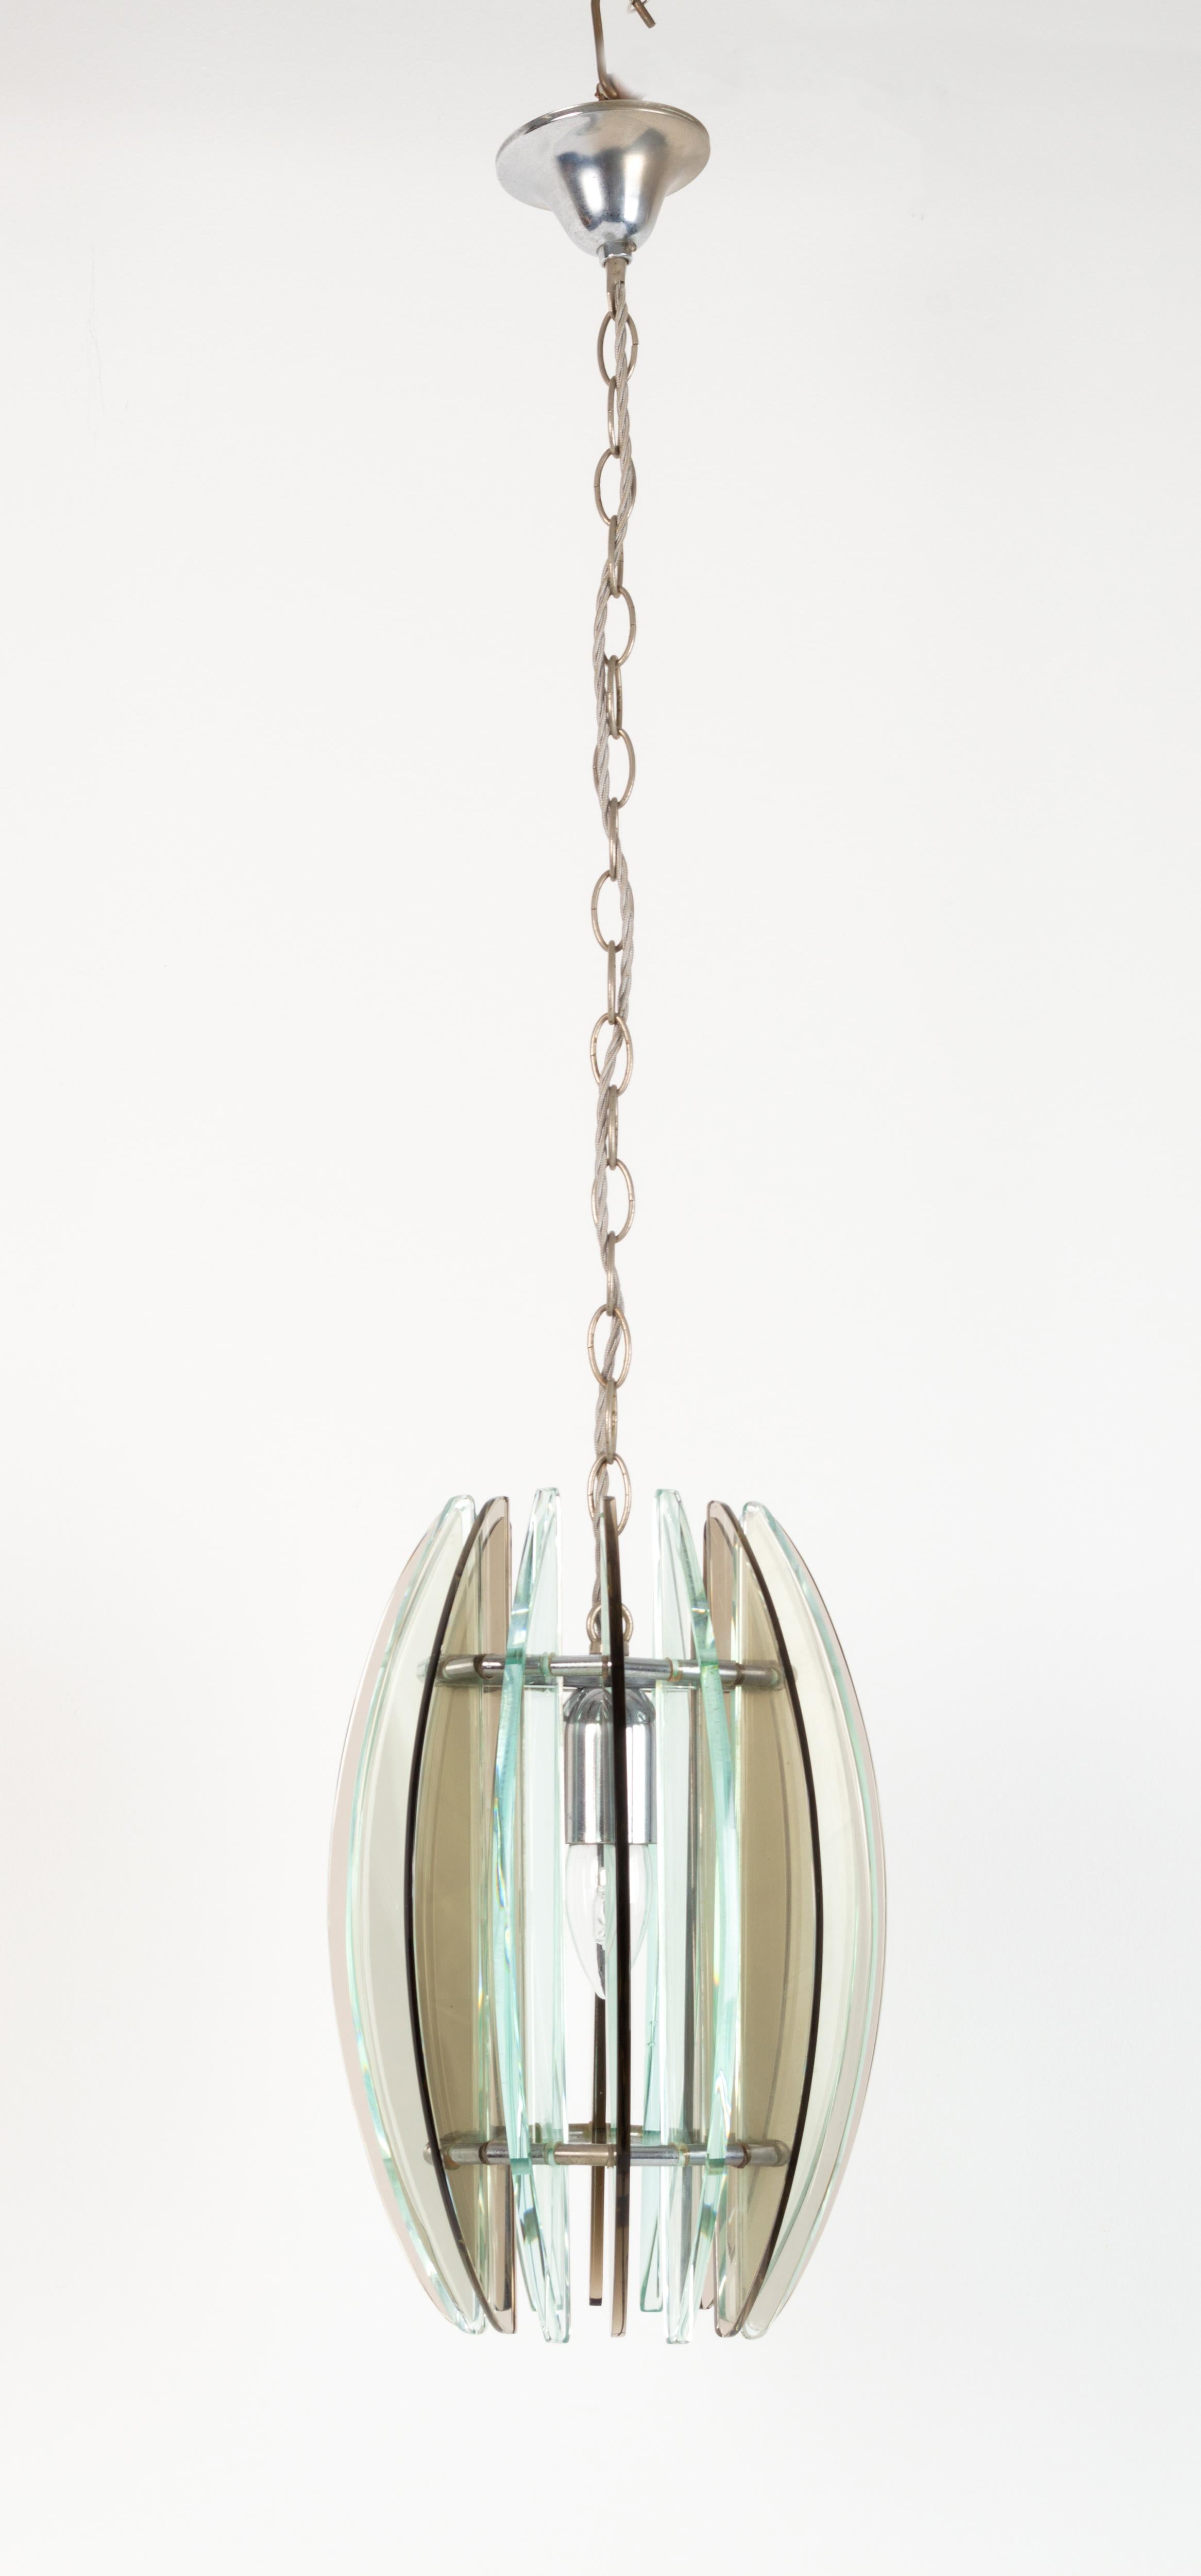 Lampe pendante italienne en verre et nickel, de style moderne du milieu du siècle.
À la manière de Max Ingrand pour Fontana Arte.
Verre épais vert et fumé avec une seule source de lumière centrale.

Excellent état proportionnel à l'âge. Sans